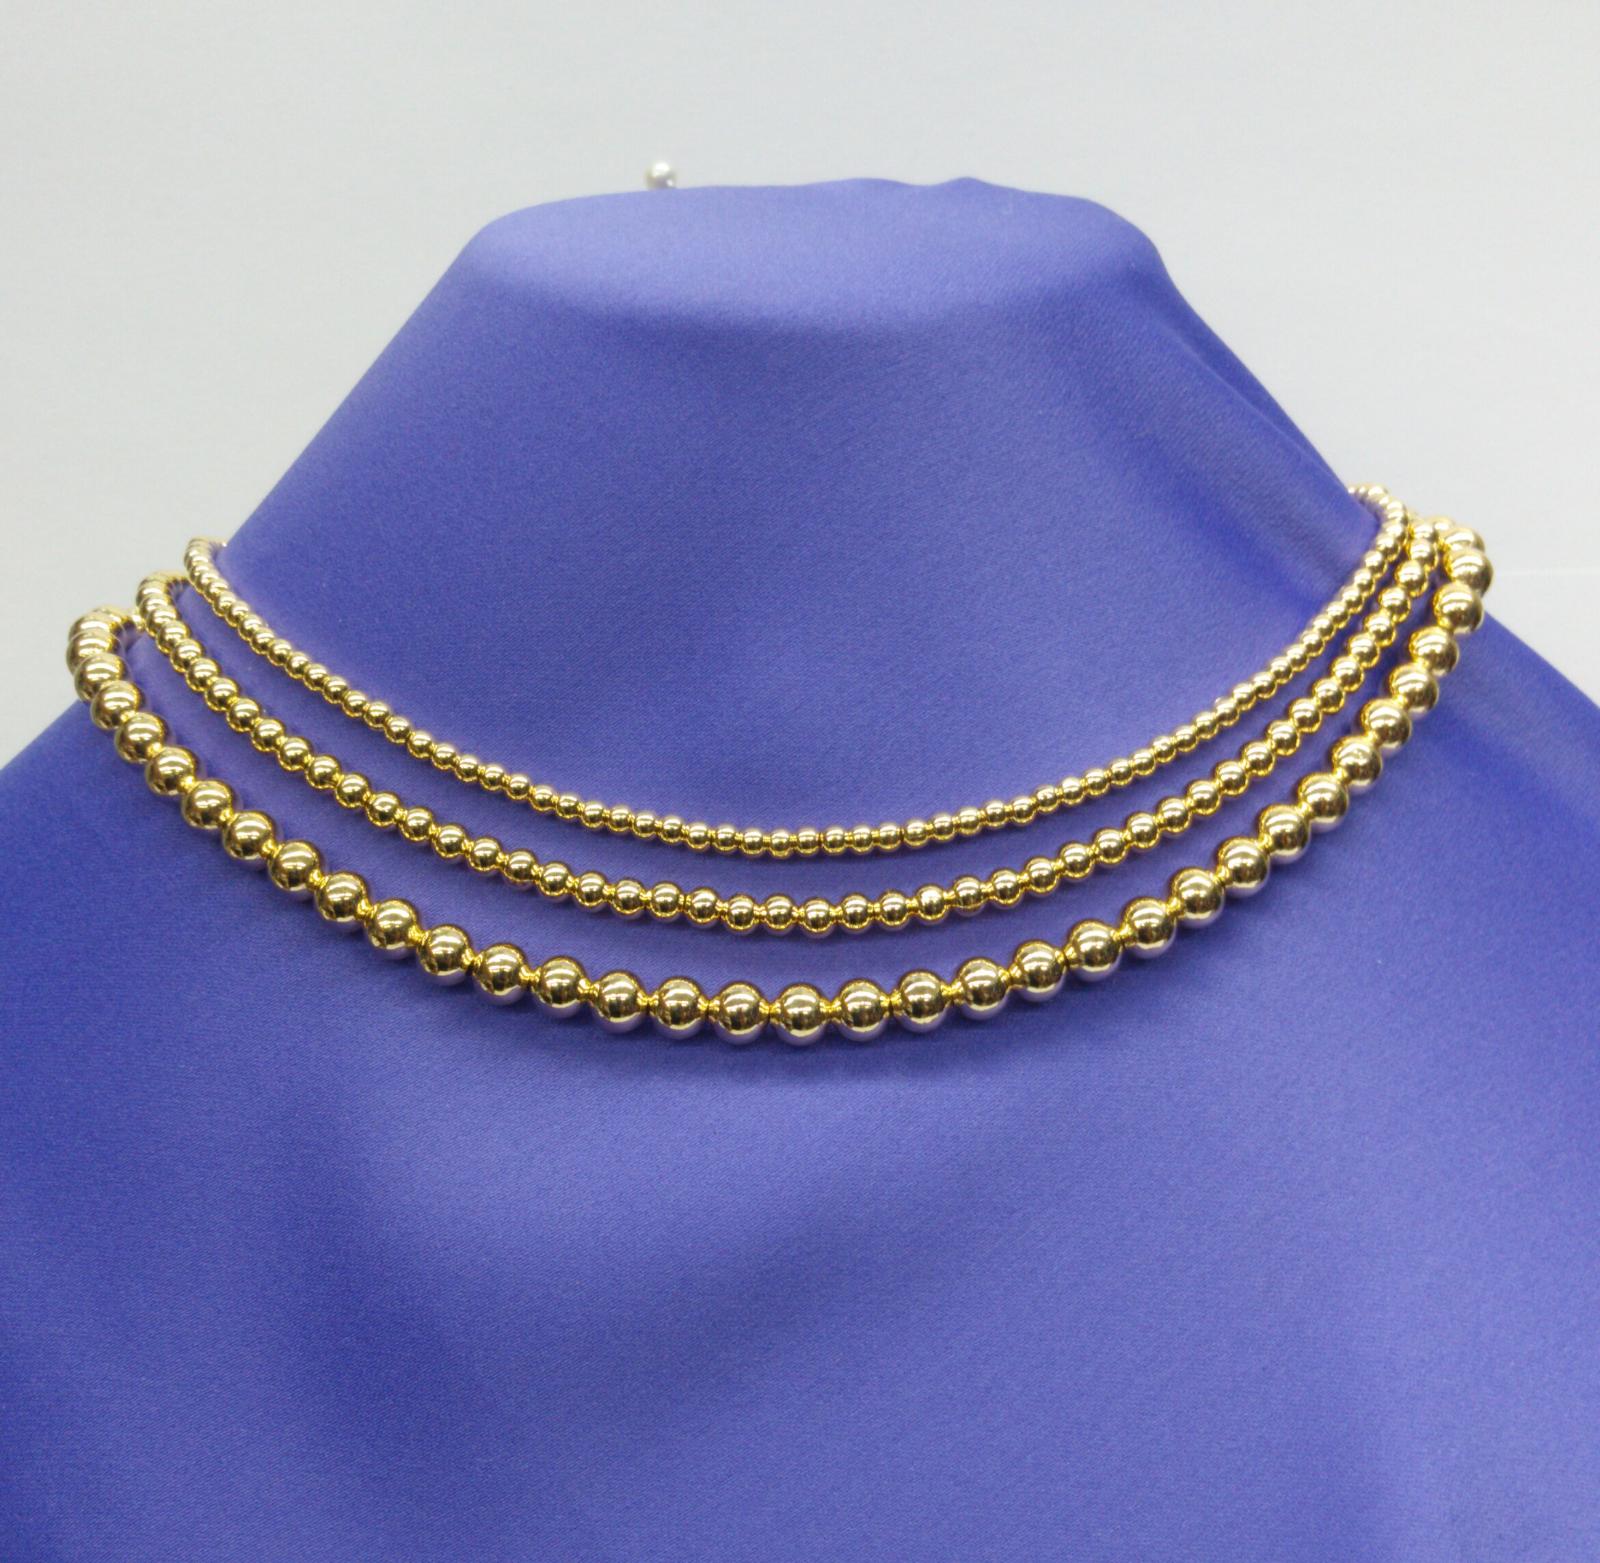 SS Bead Chain 30 001-600-02447 - Carroll's Jewelers, Carroll's Jewelers